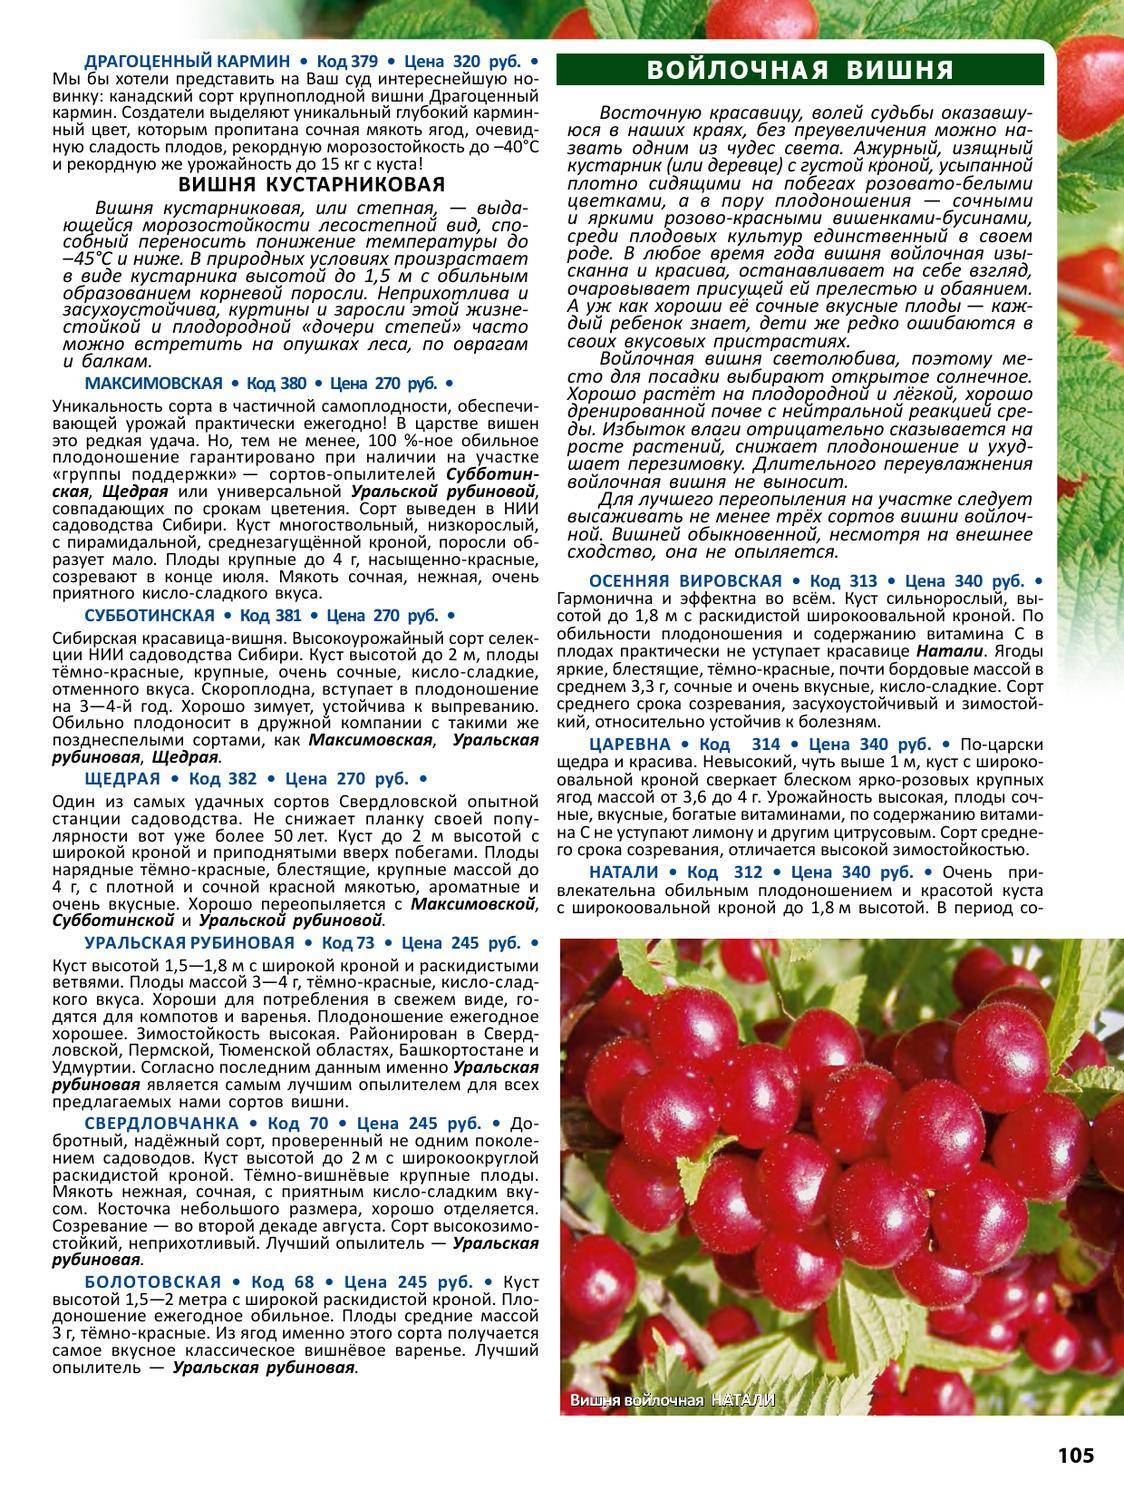 ✅ о вишне кармин джуэл: описание и характеристики сорта, уход и выращивание